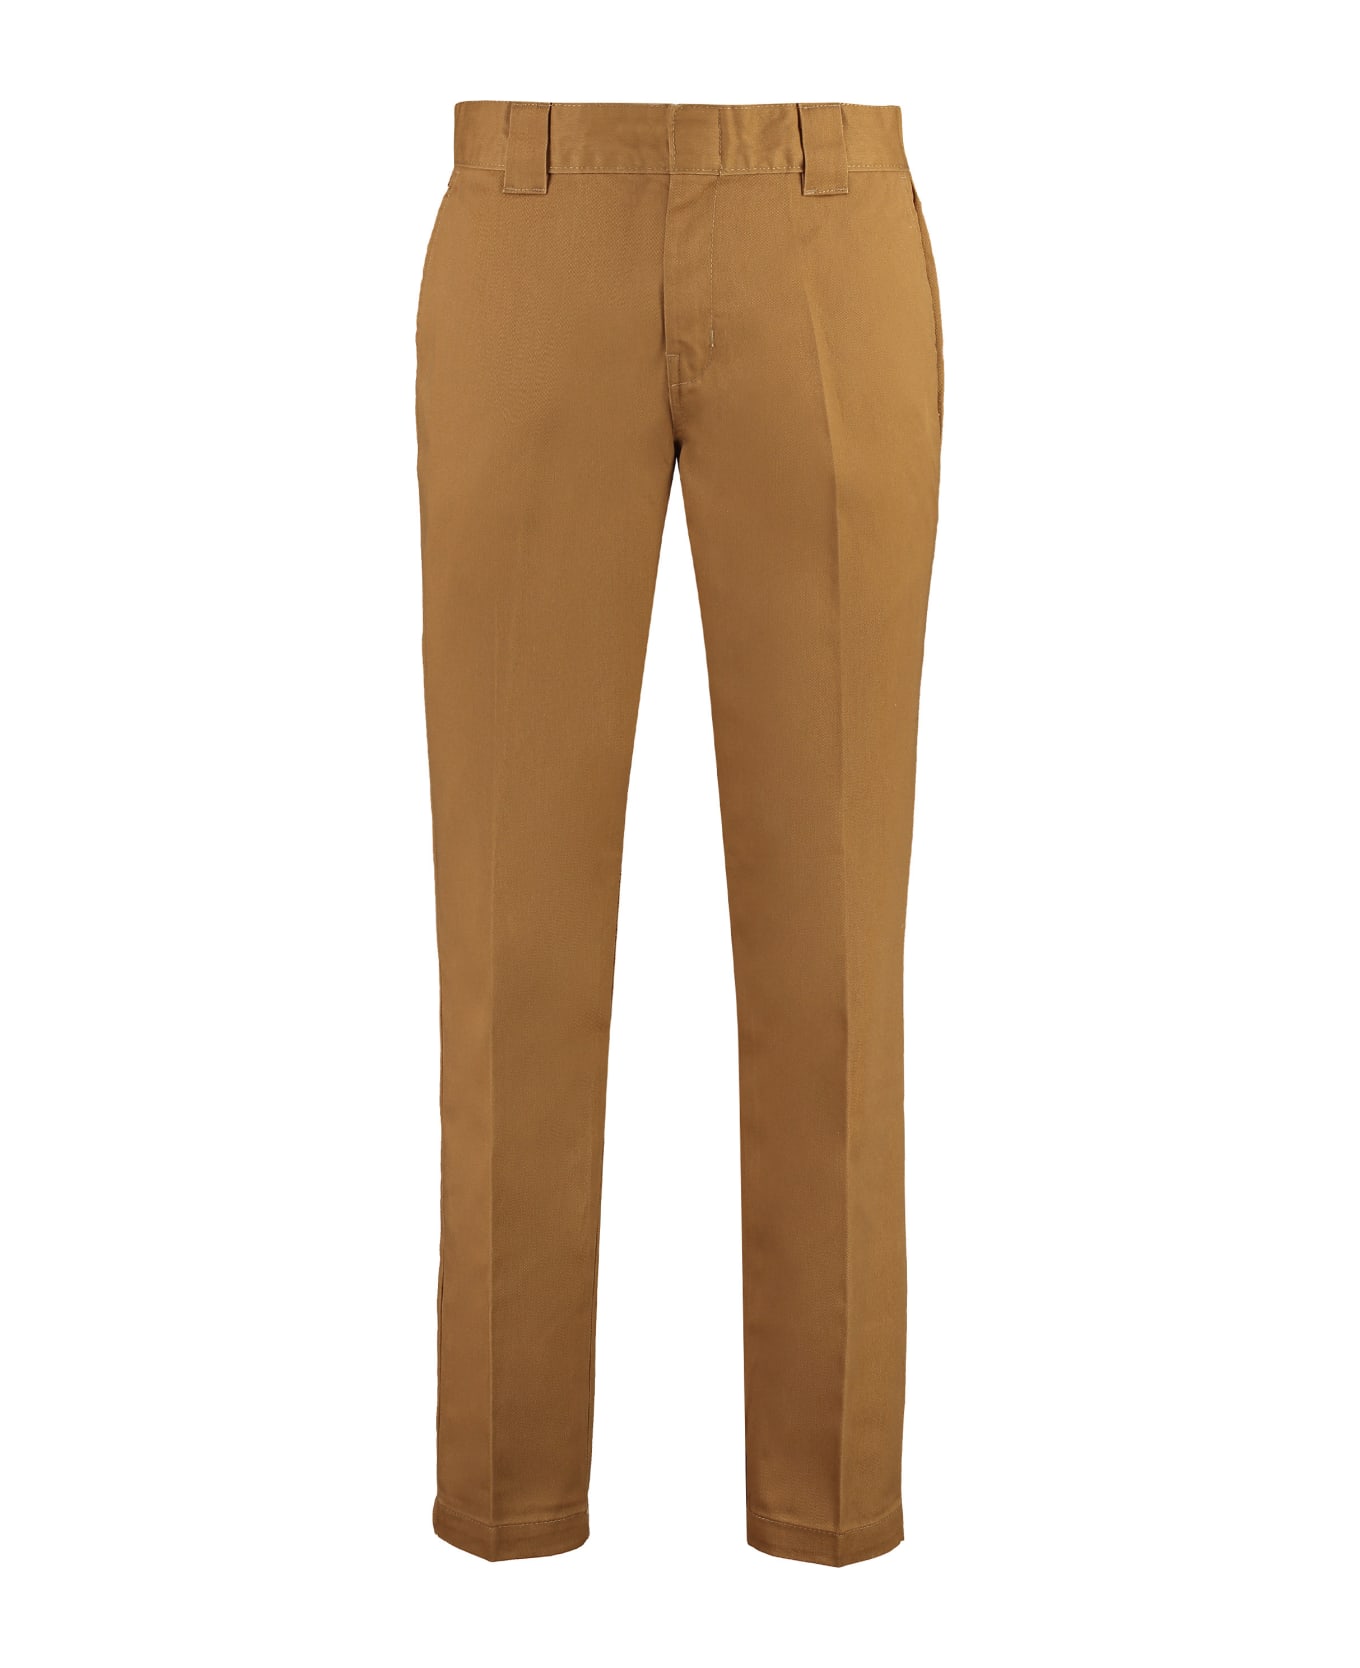 Dickies 872 Slim Fit Trousers - brown